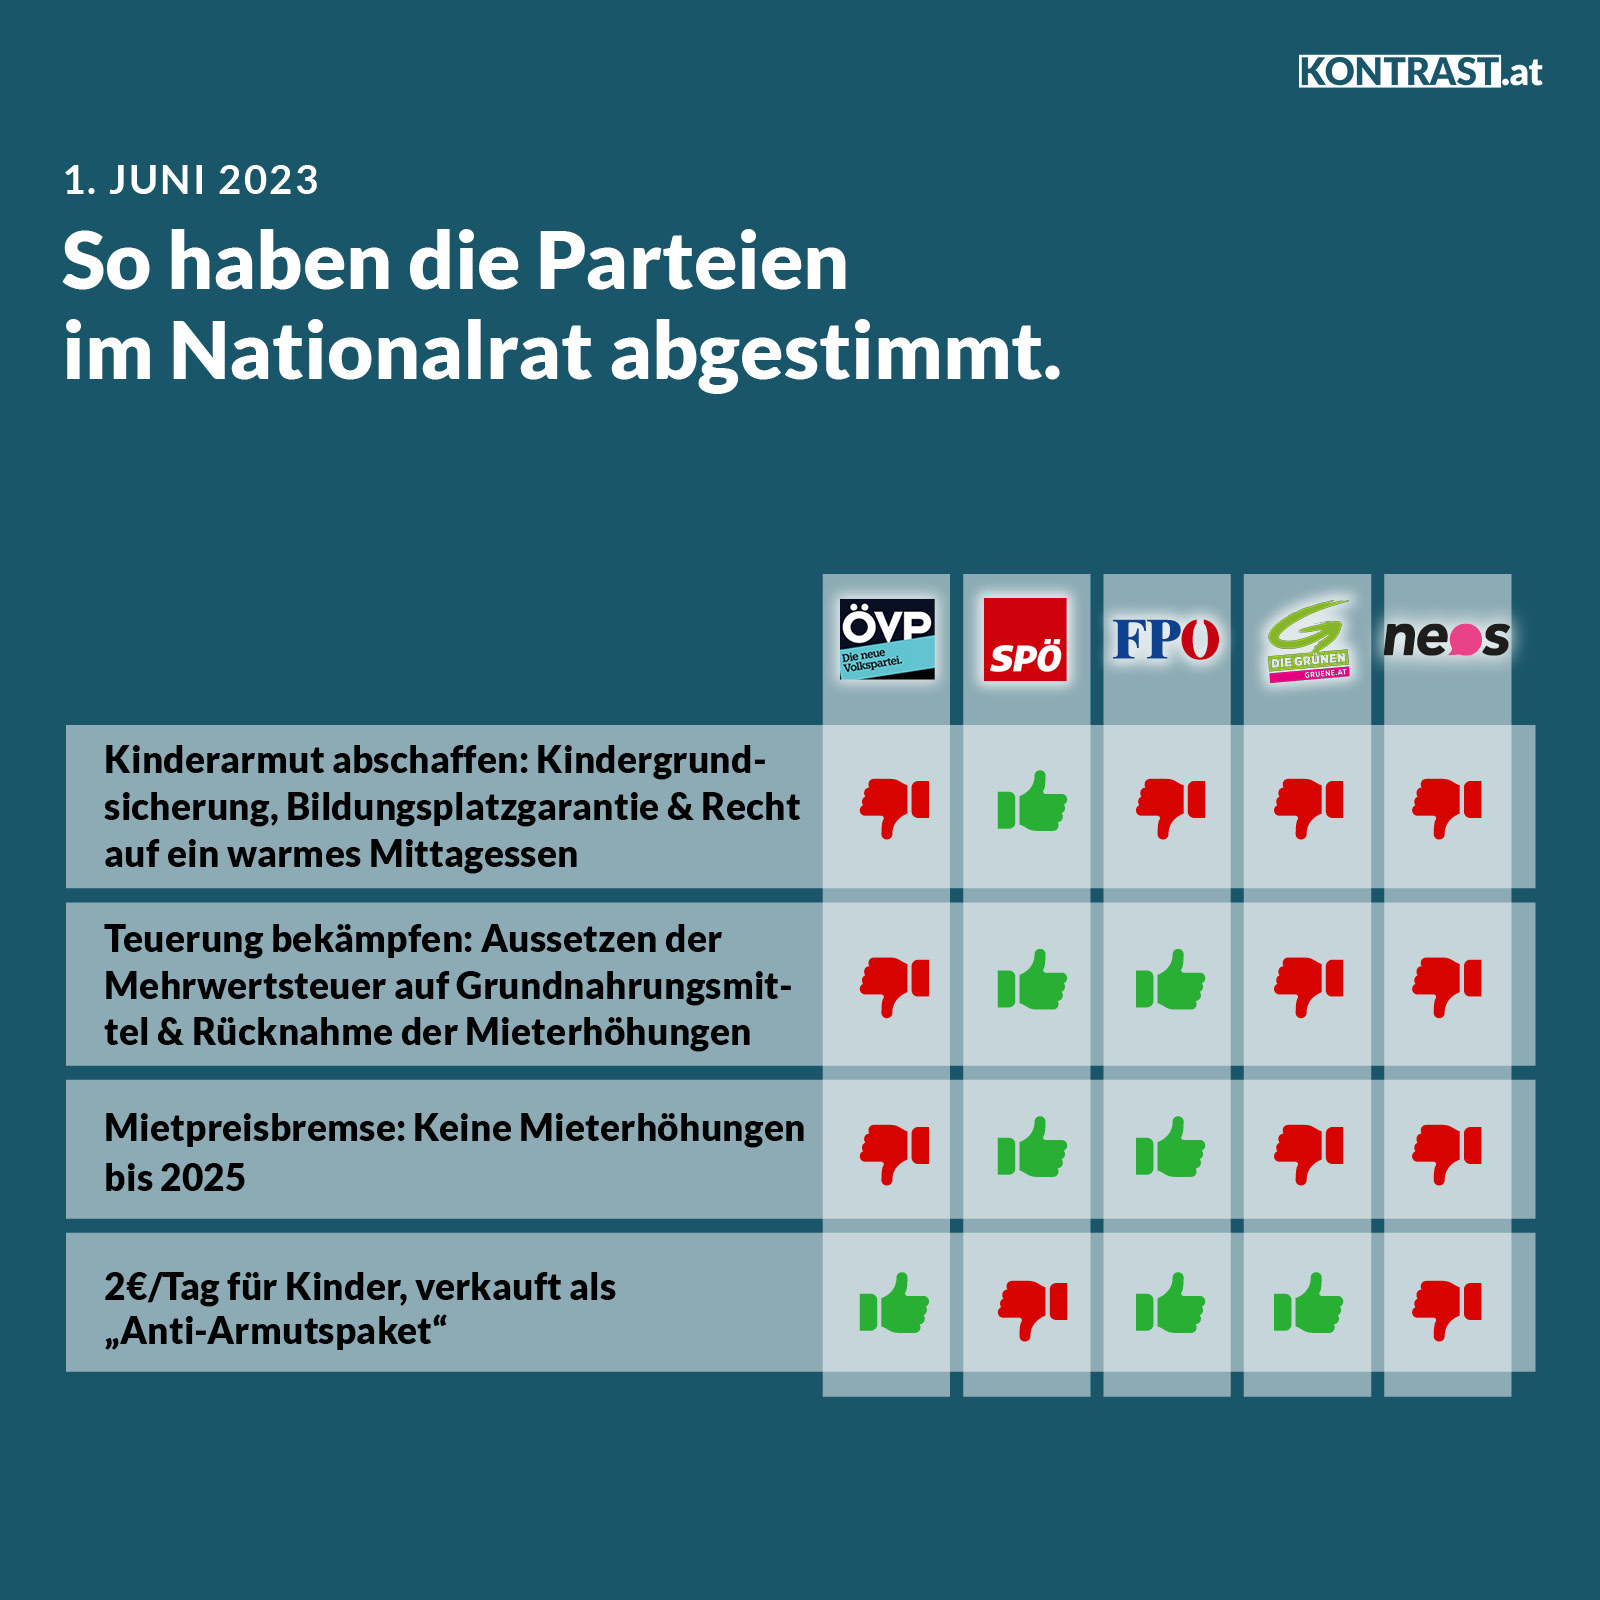 Nationalratssitzung am 1. Juni 2023: So haben die Parteien abgestimmt